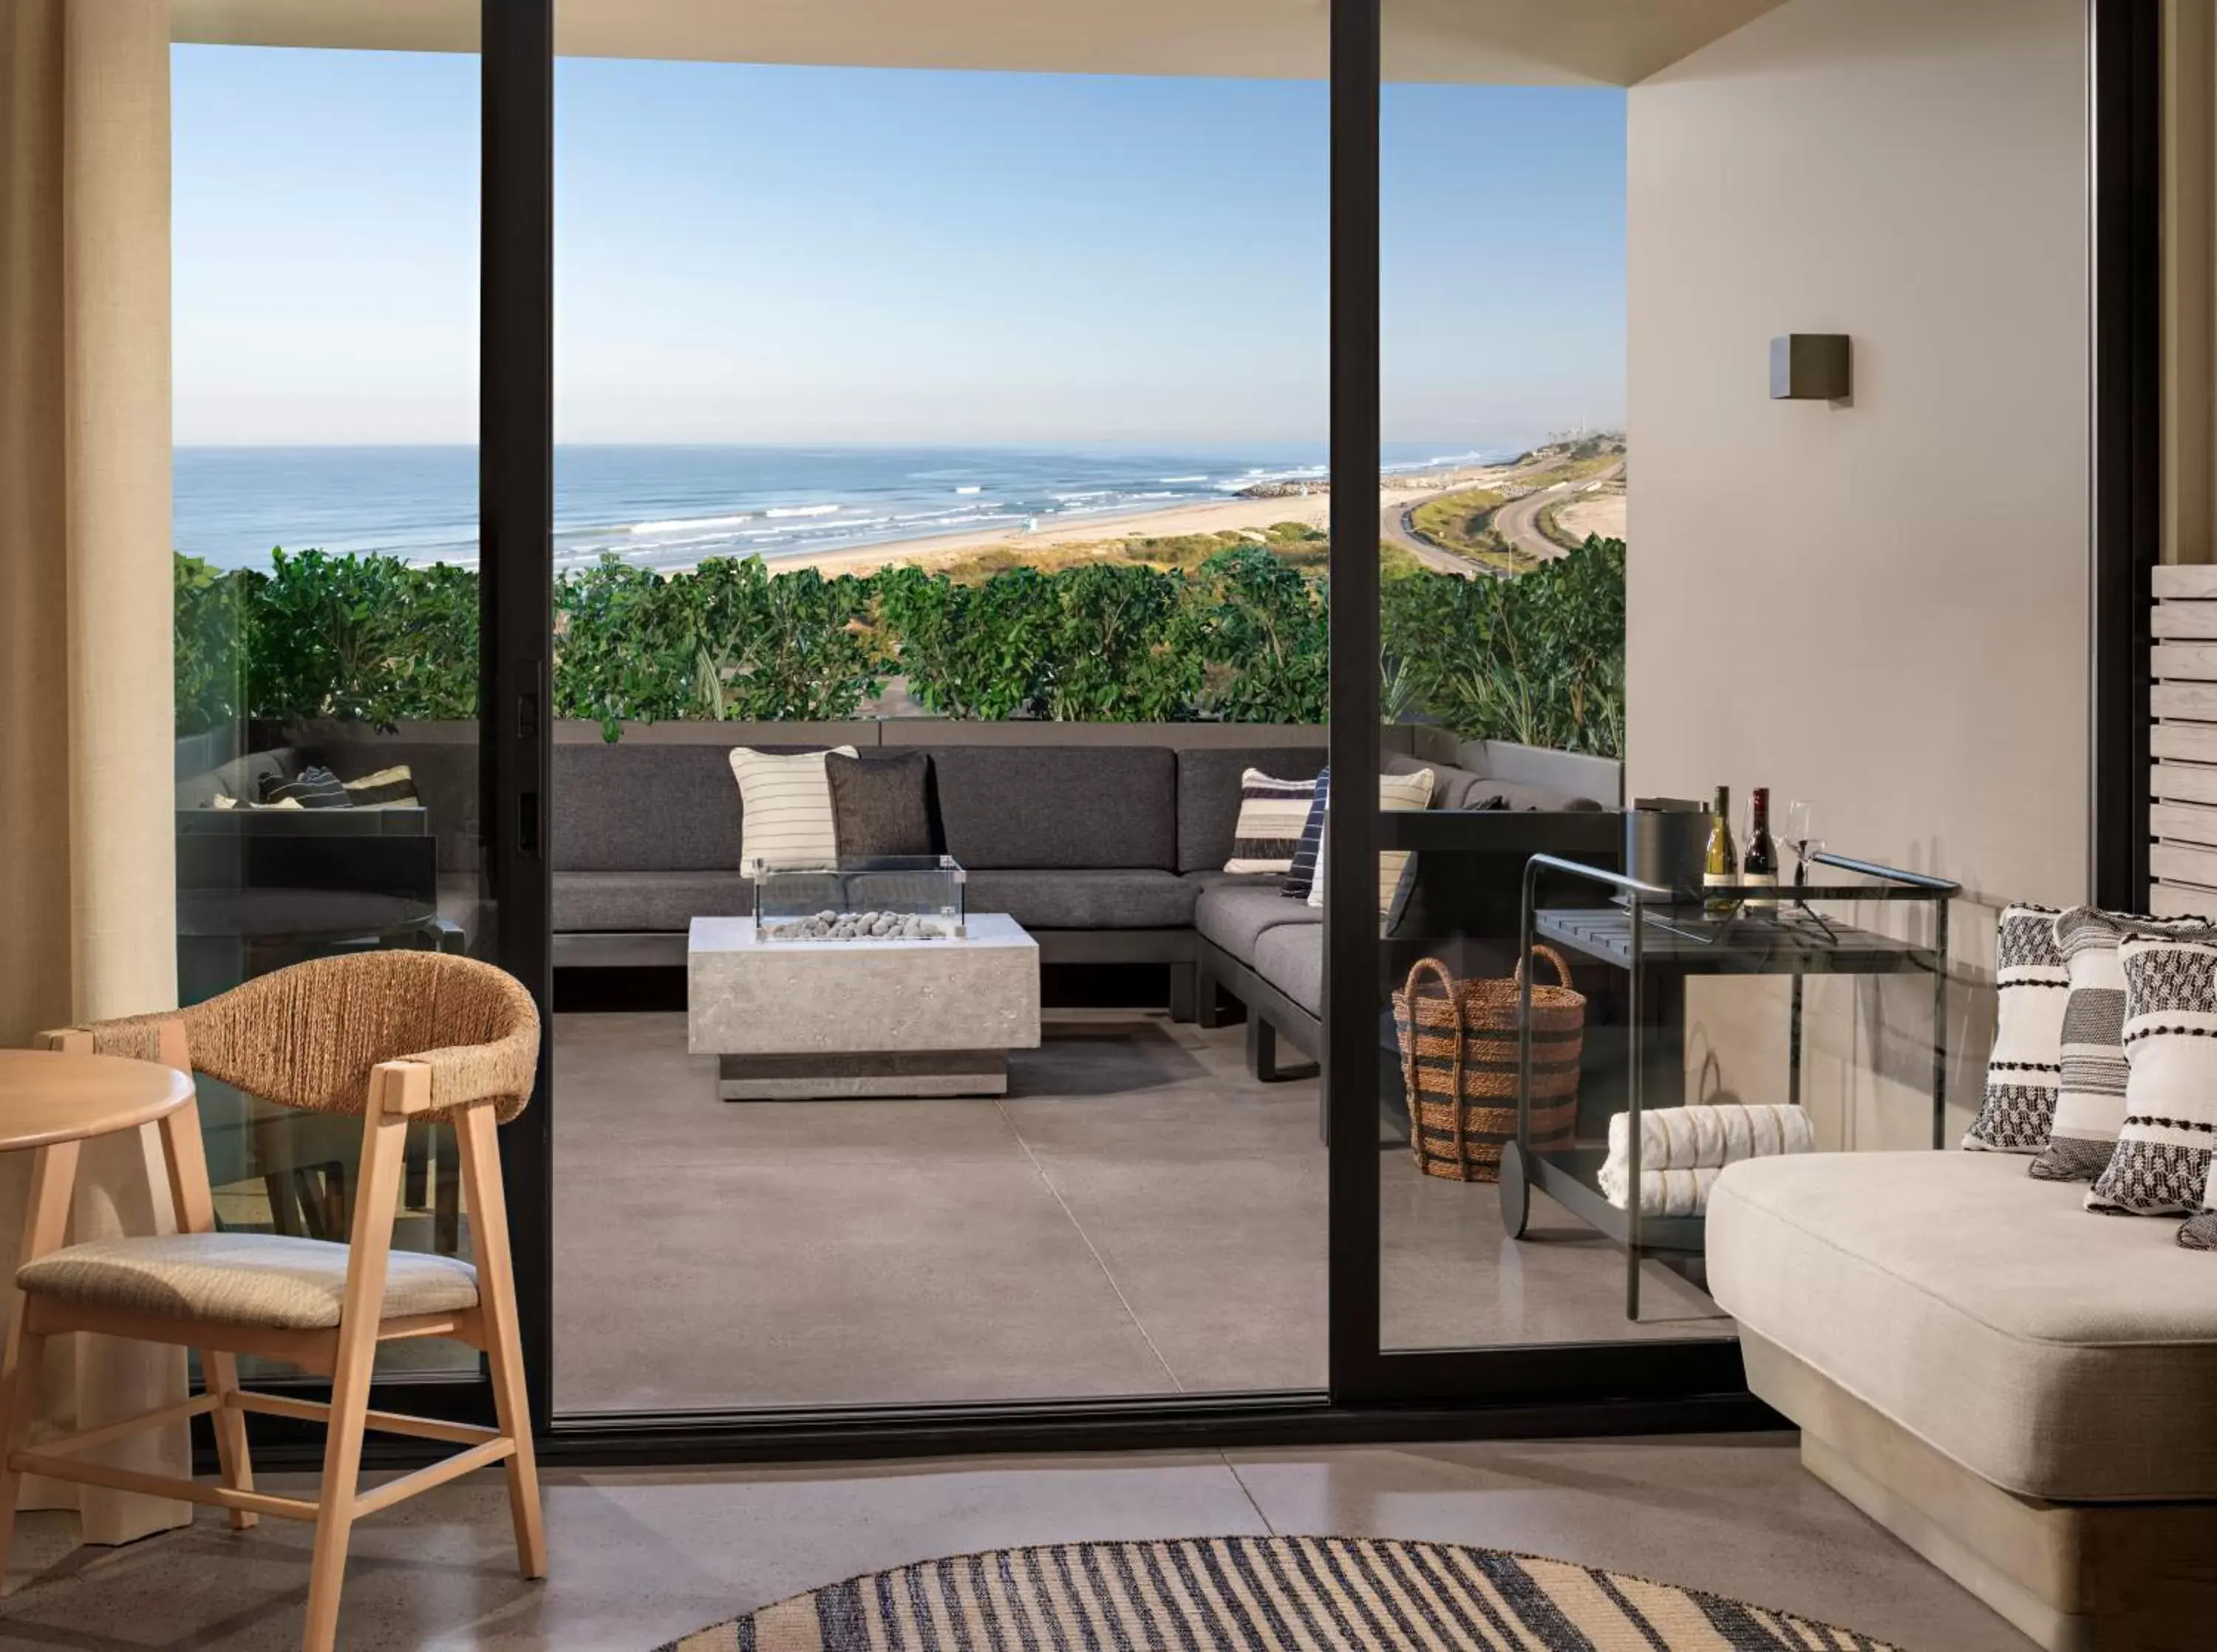 Balcony/Terrace, Seating Area in Alila Marea Beach Resort Encinitas